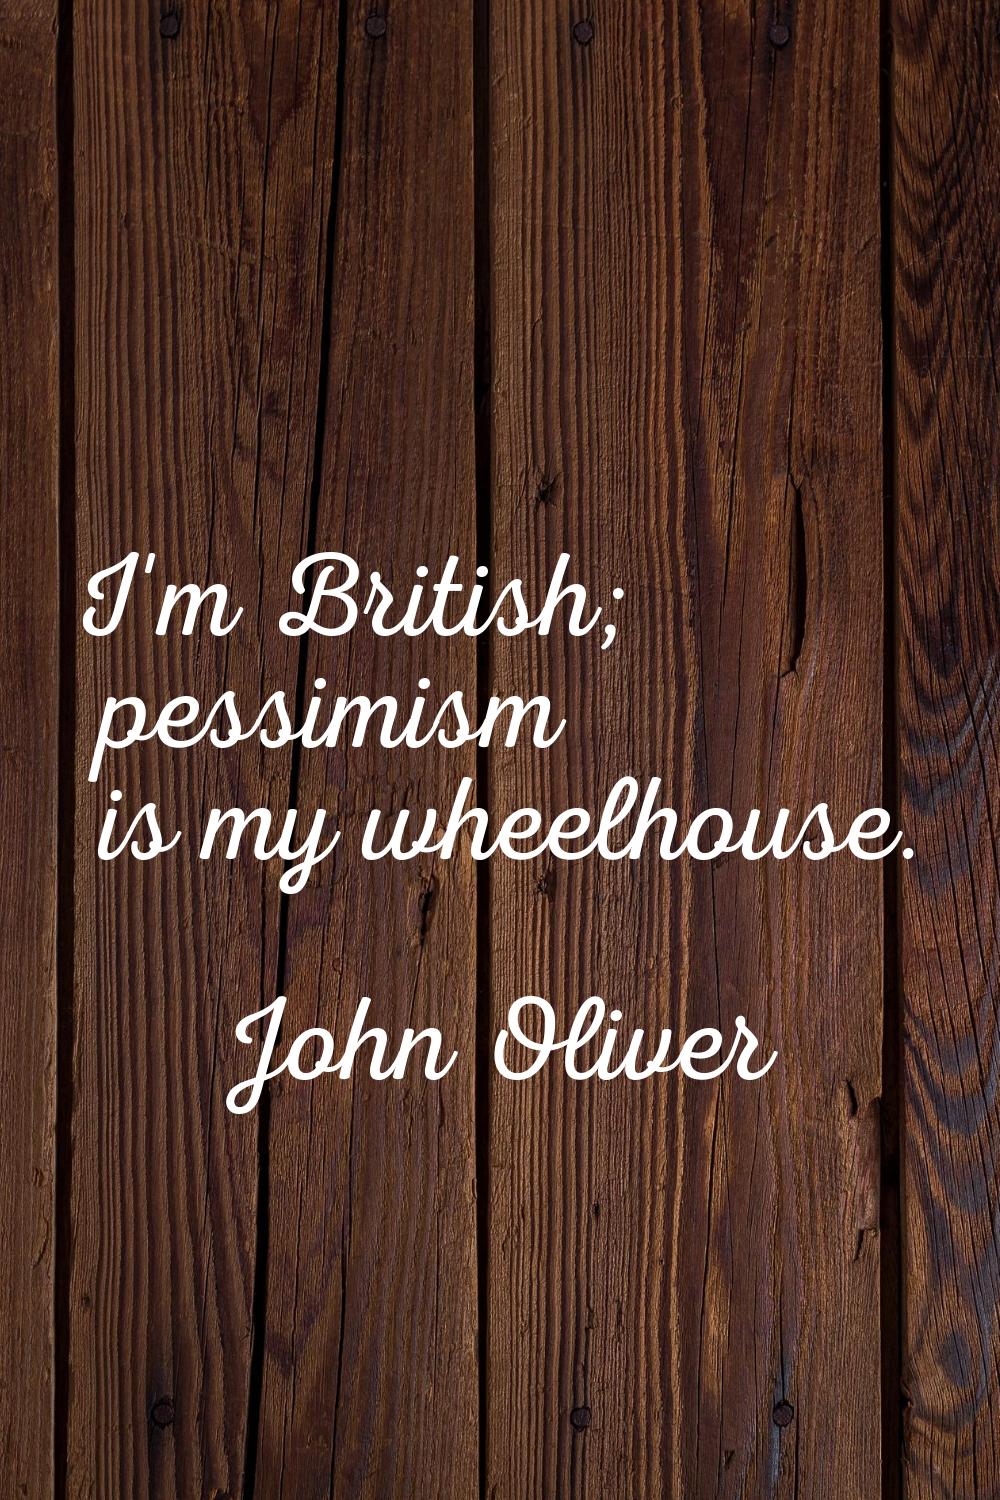 I'm British; pessimism is my wheelhouse.